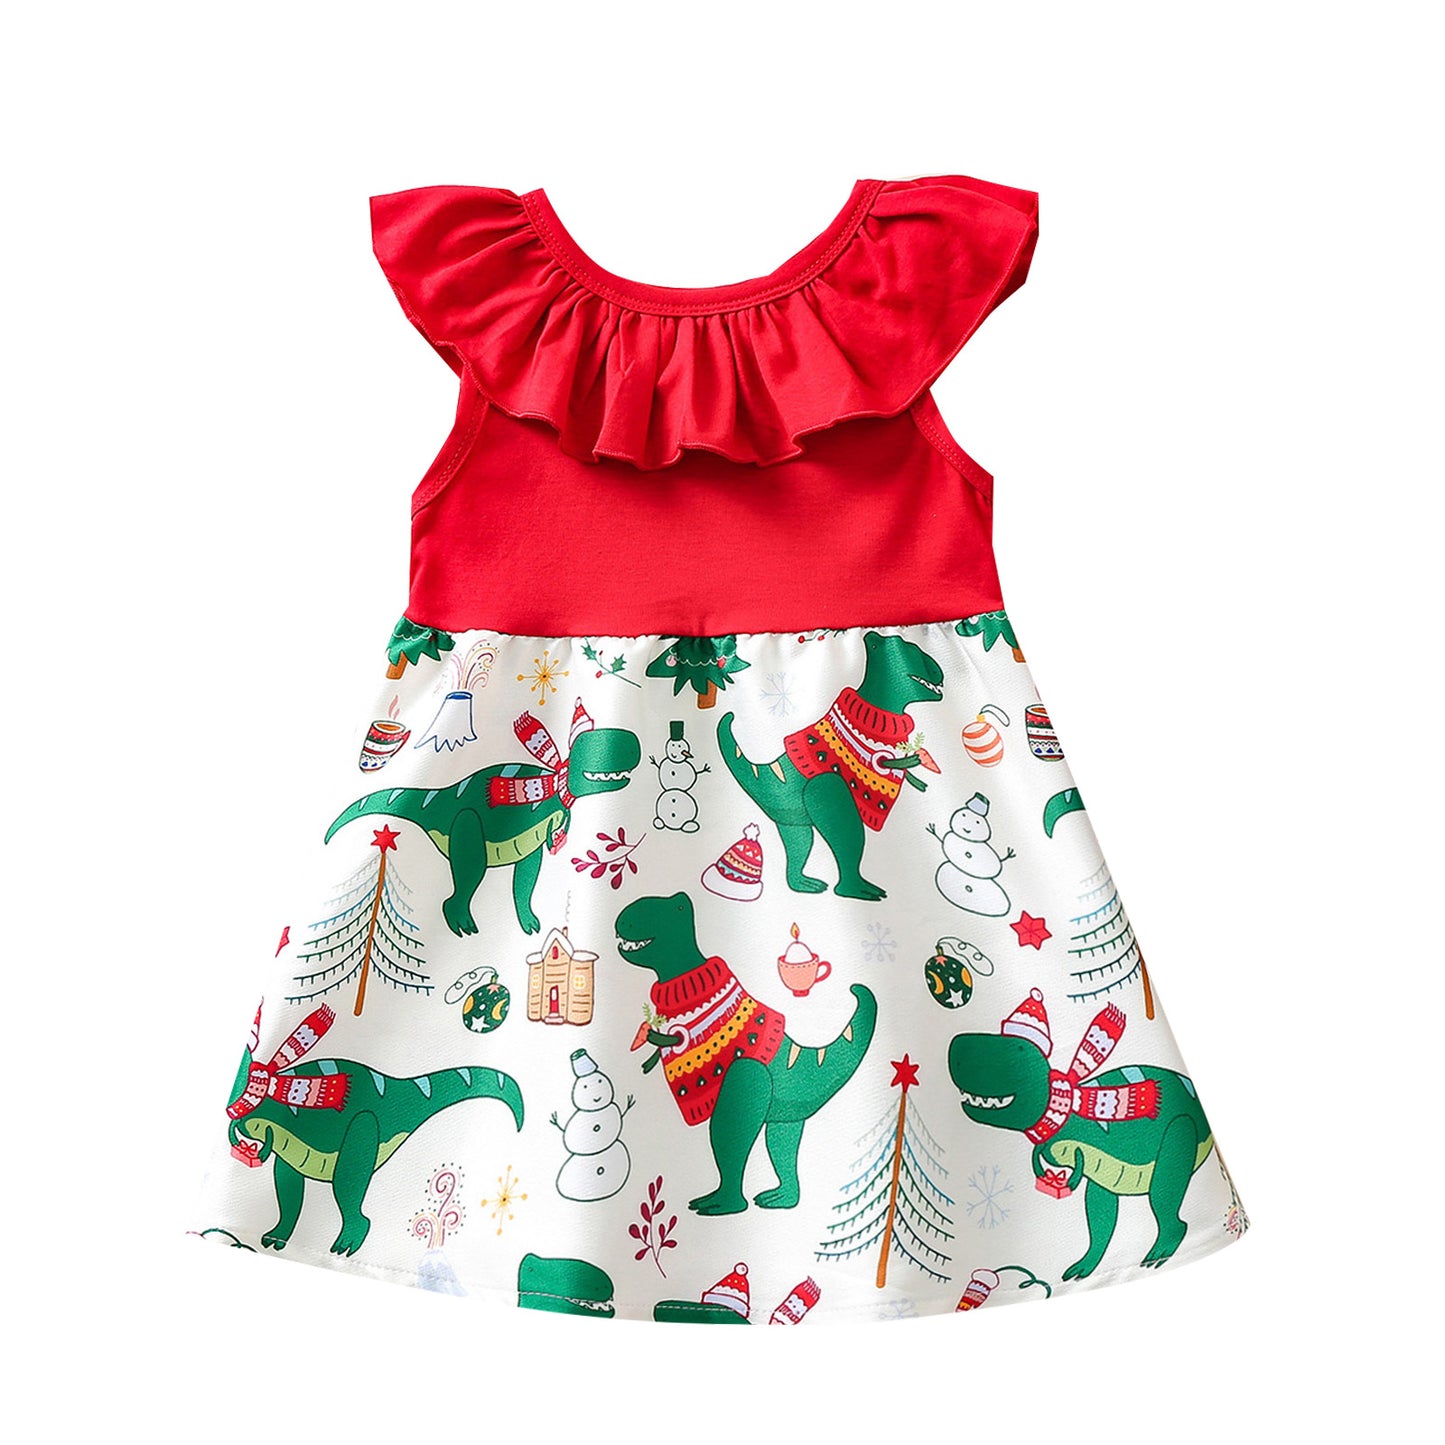 Children's New Ruffles Sleeveless Printed Dress